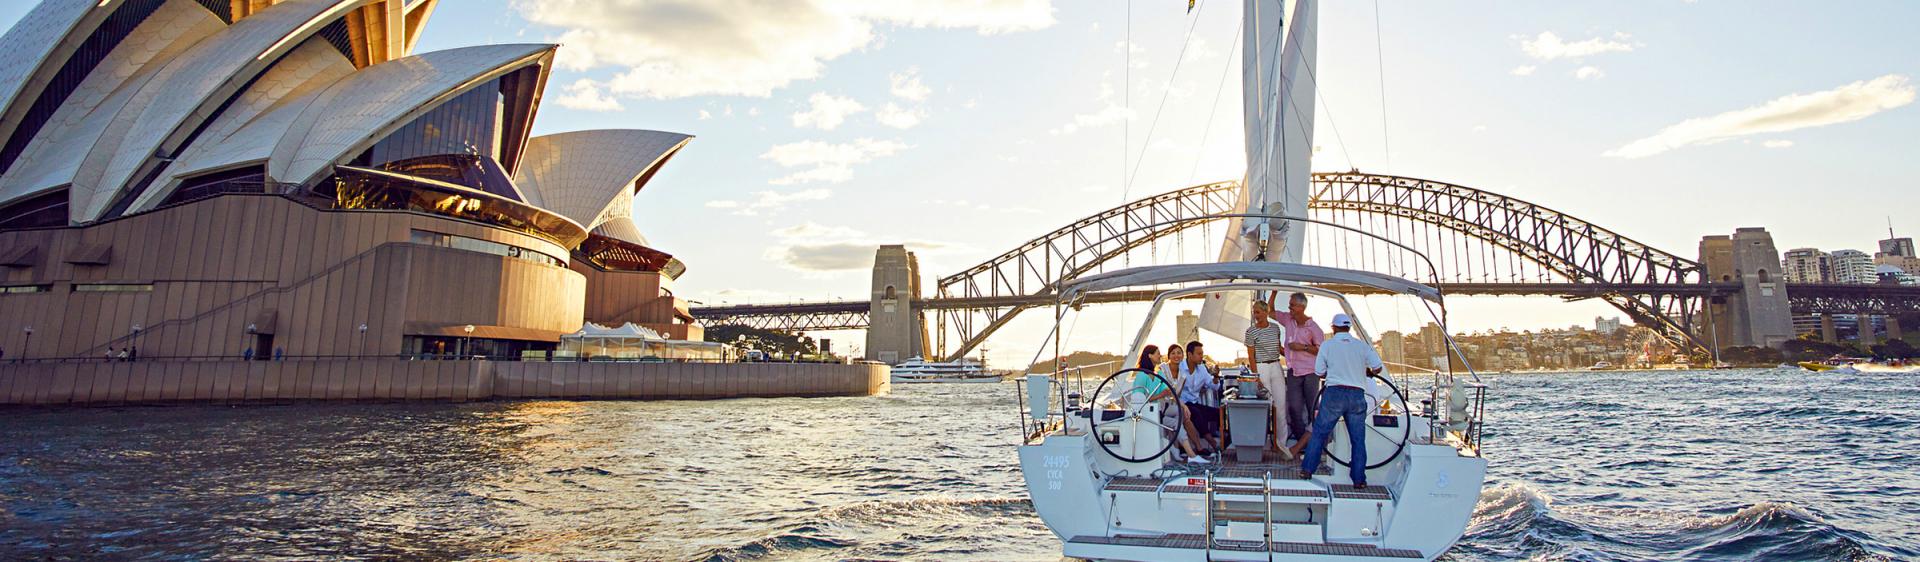 在悉尼港 (Sydney Harbour) 扬帆航行